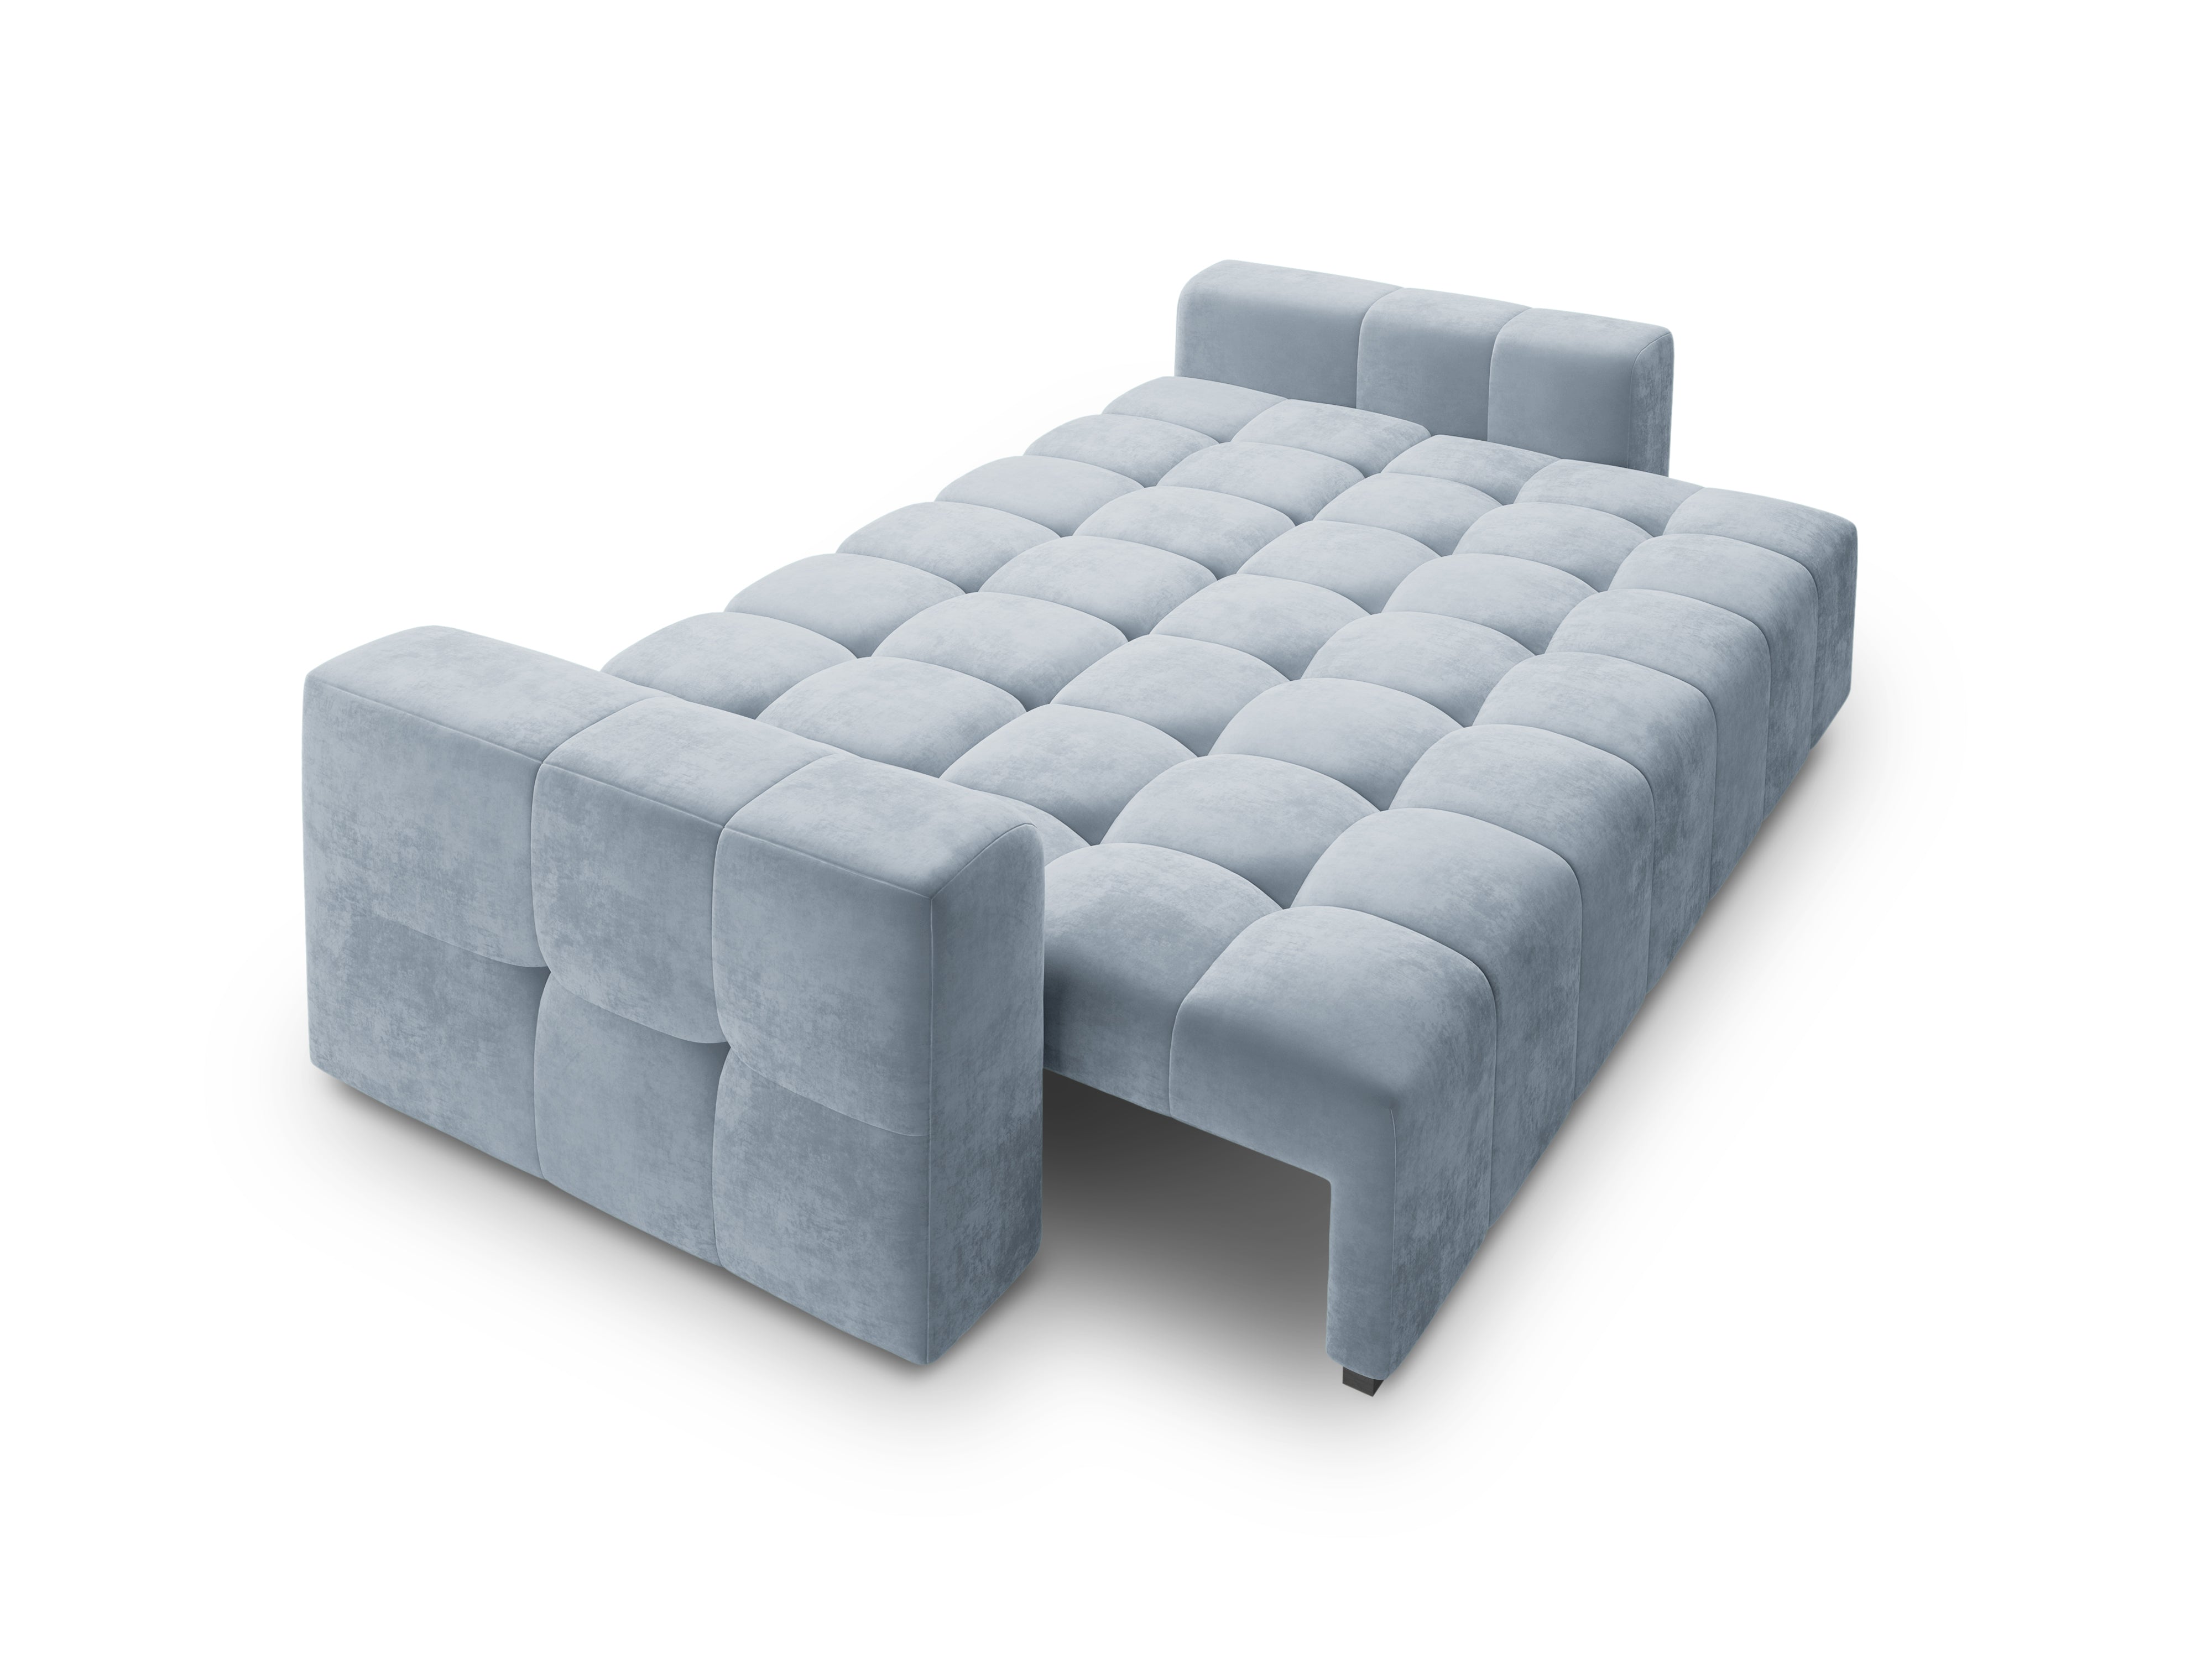 LUCA velvet sofa with sleeping function light blue